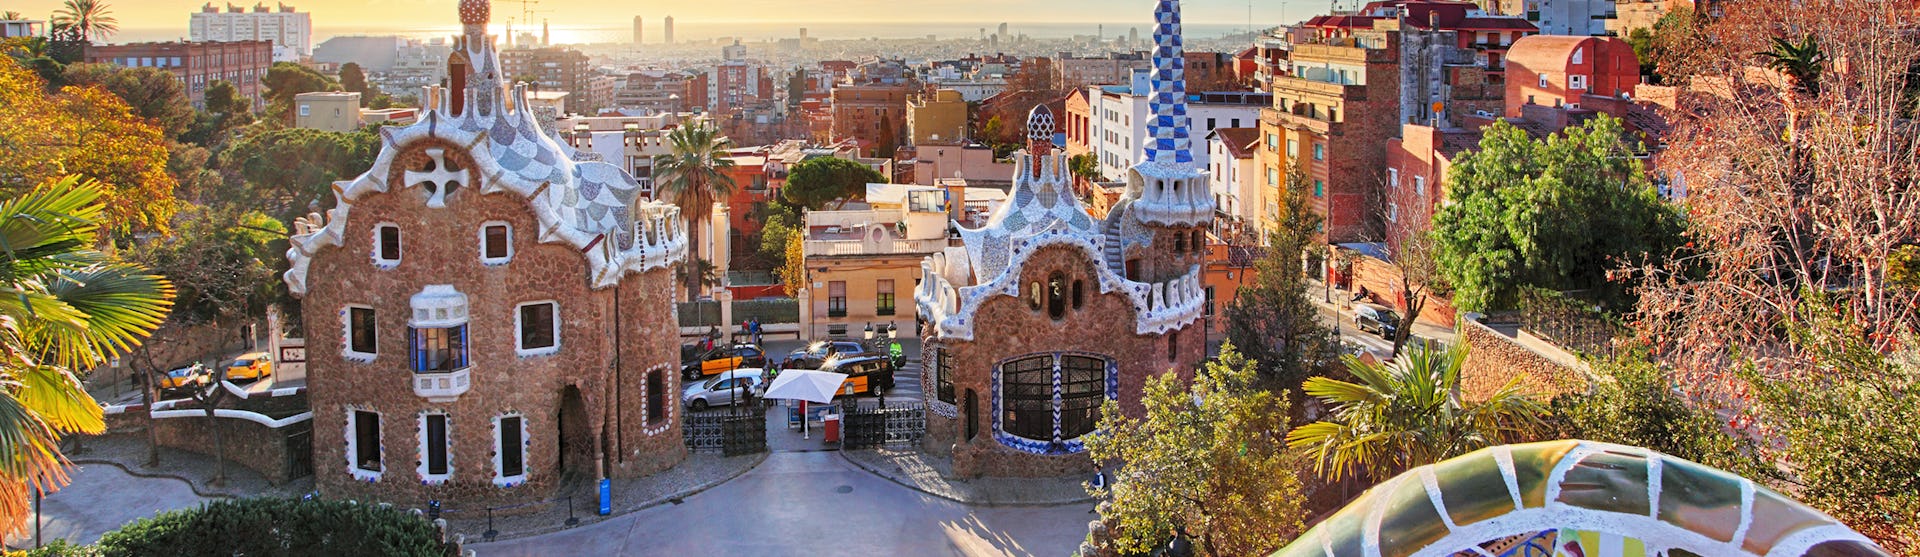 Bild på staden Barcelona. Upplev länder och kulturer på en kryssning i Medelhavet. Hitta din nästa kryssning i Medelhavet hos oss på CruiseMarket.